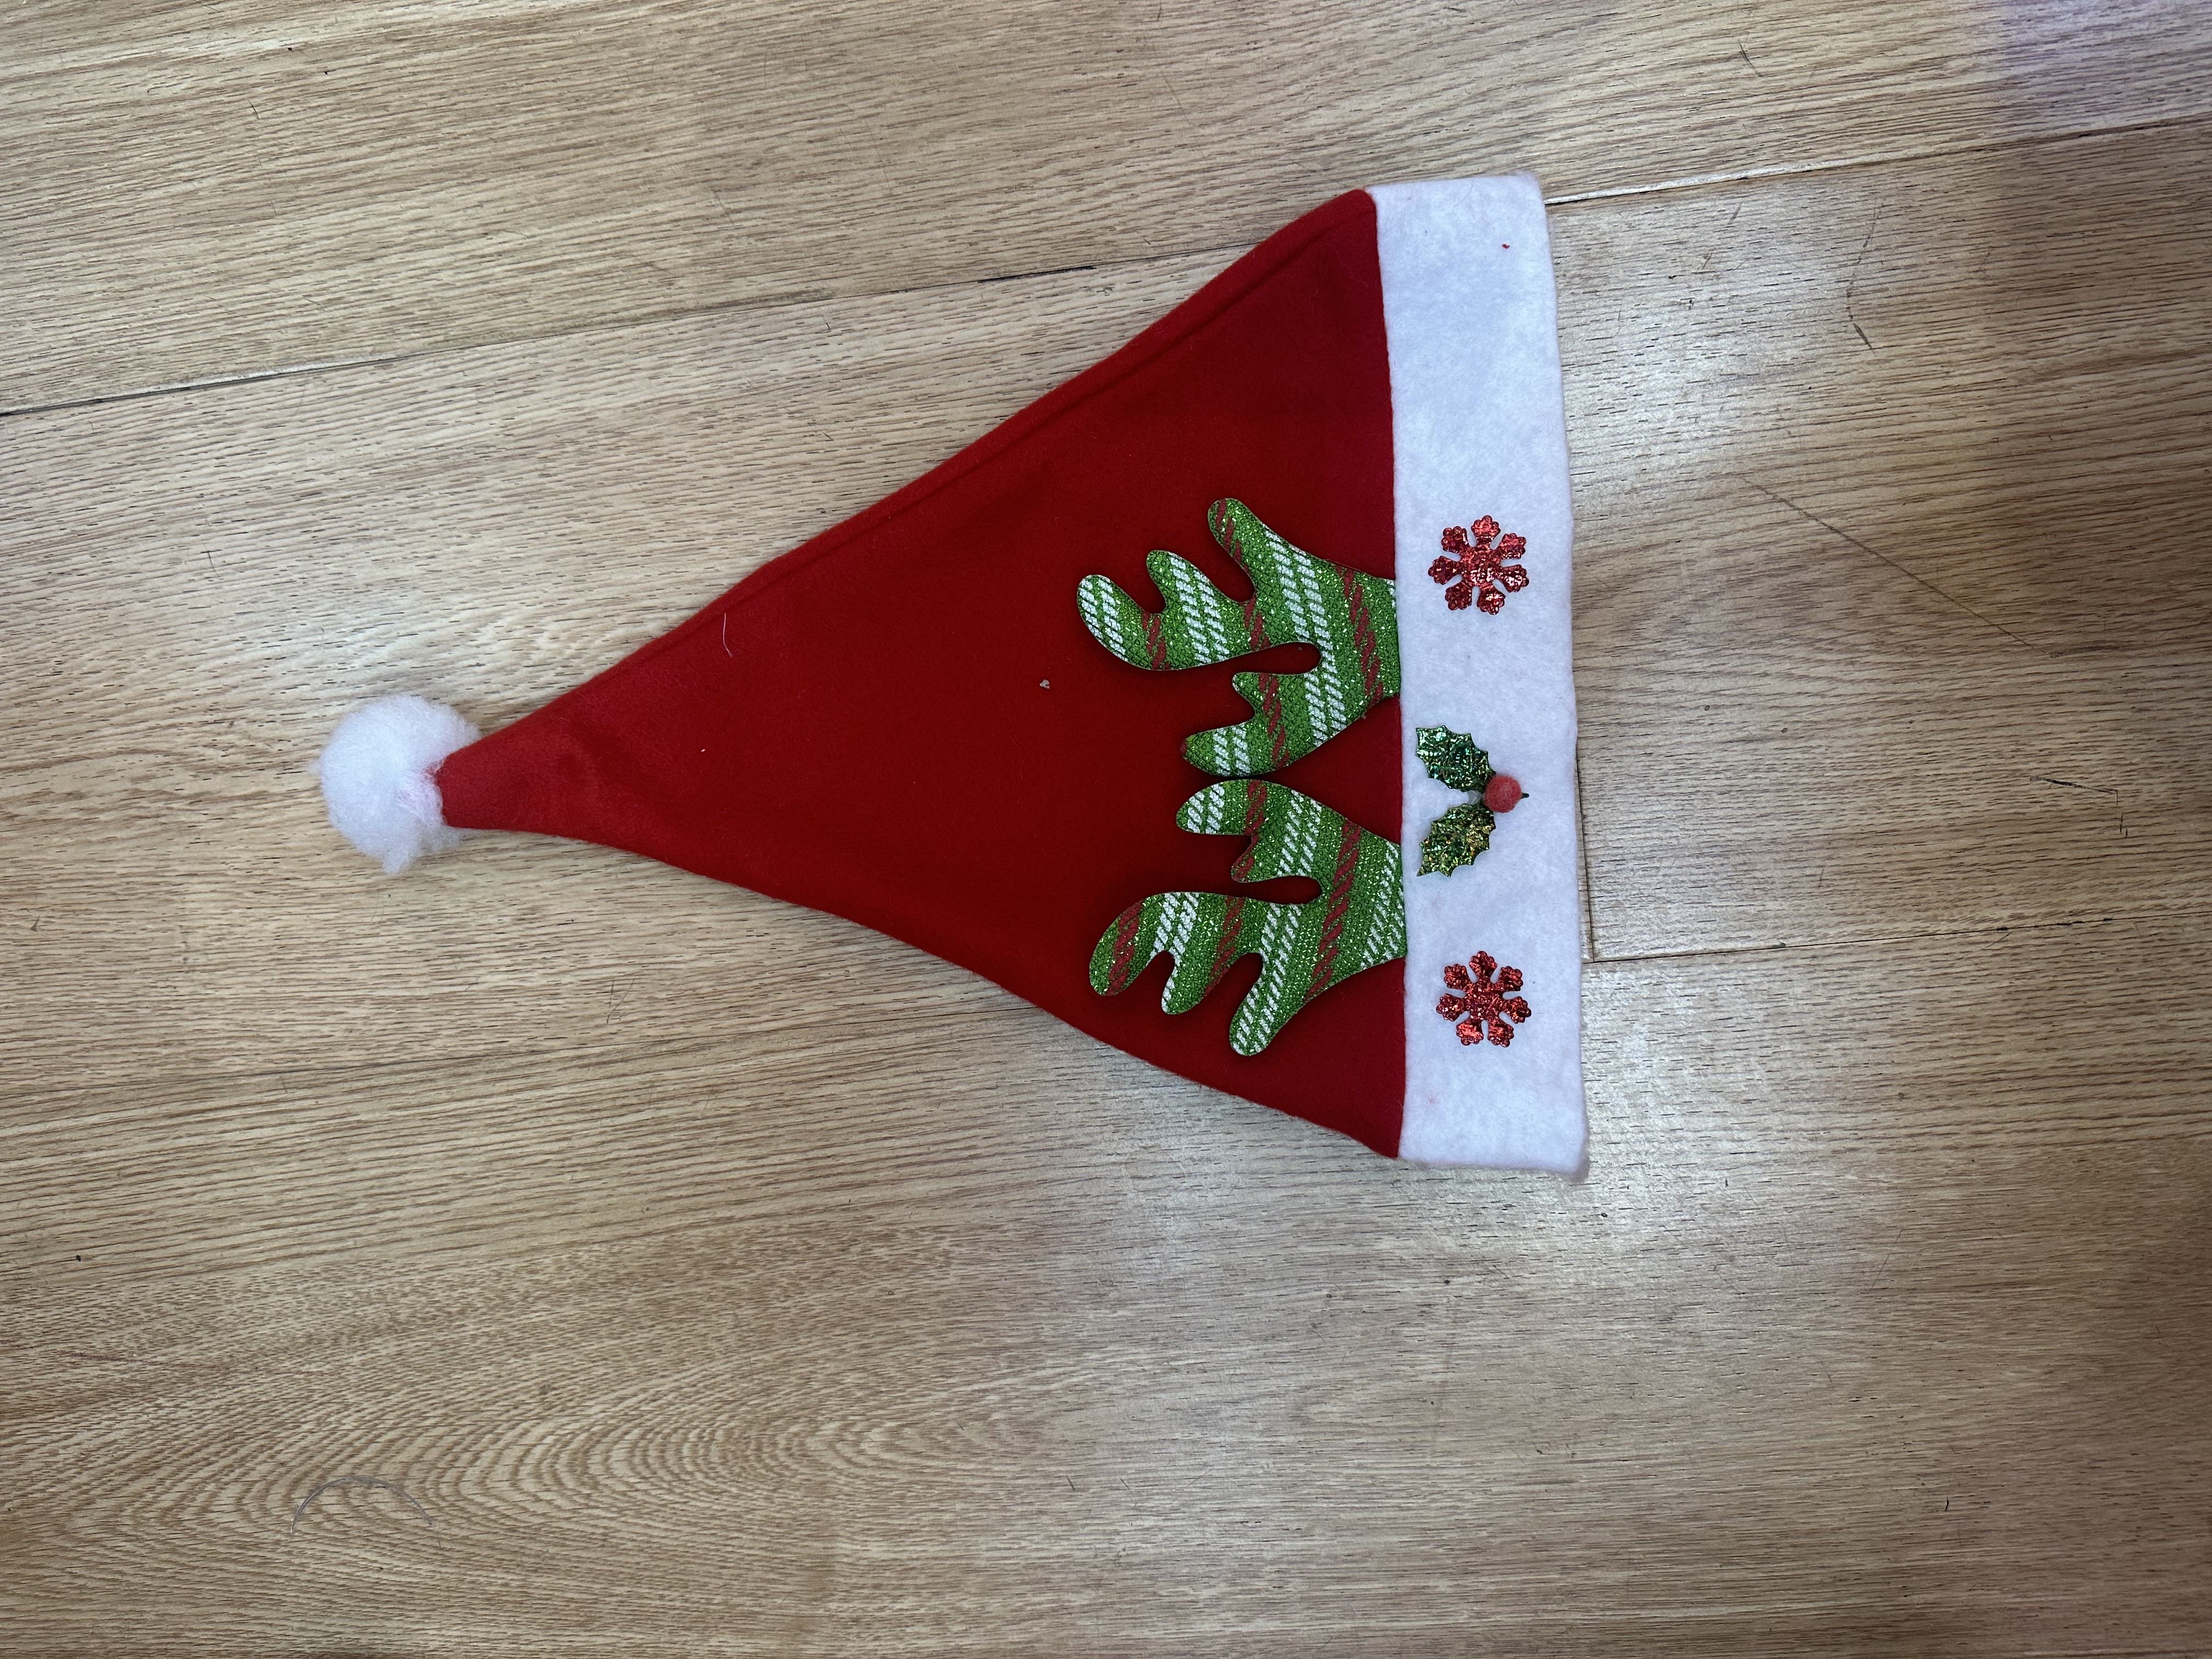 节日礼品1.8米PVC圣诞树 环保无味圣诞装饰品 室内外圣诞节气氛布置必备